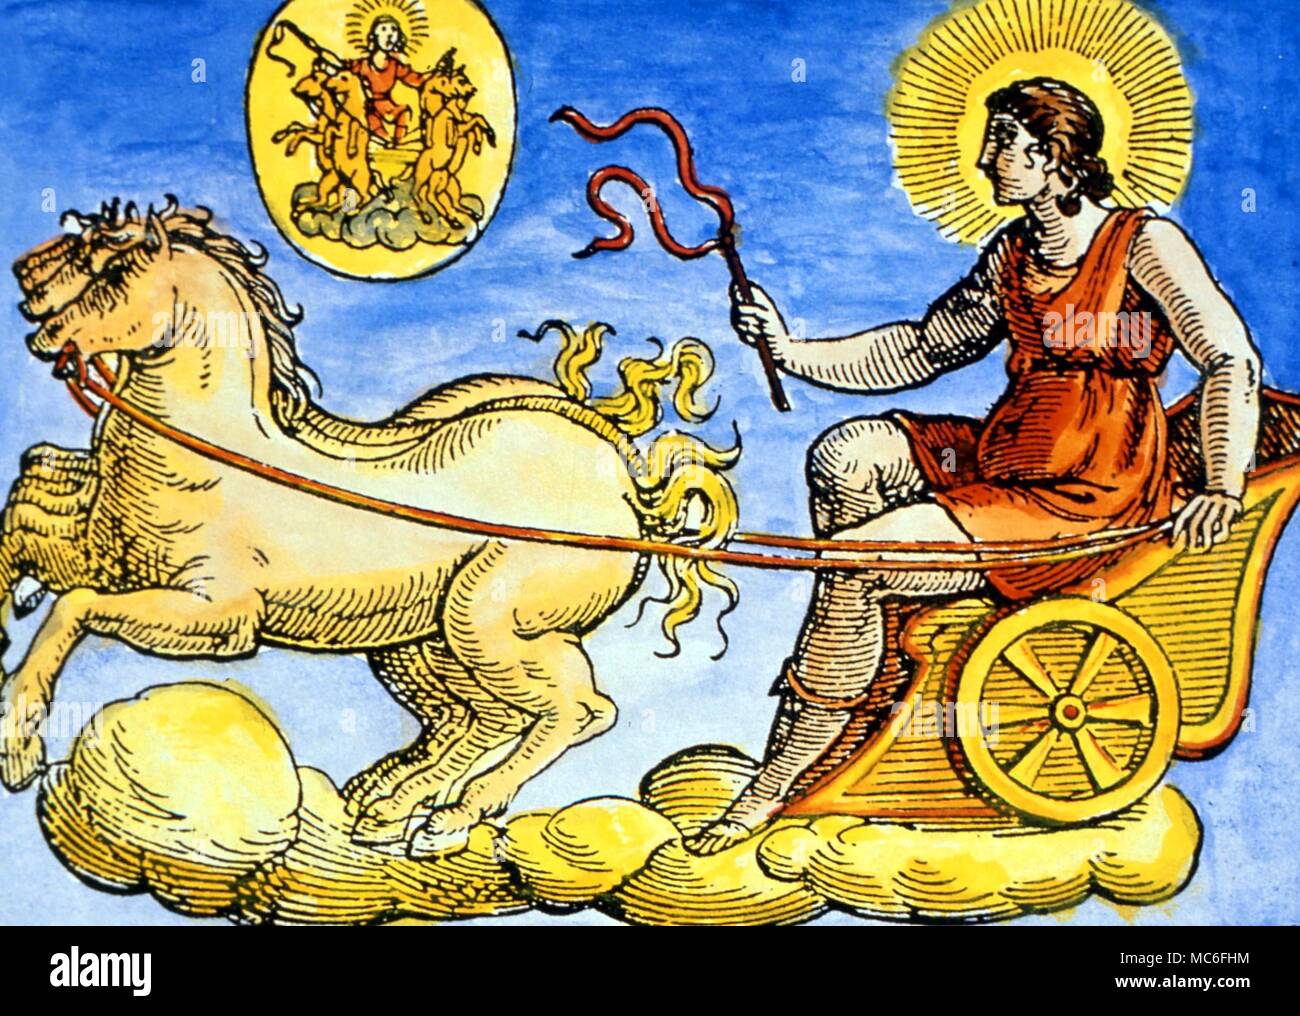 Hélios, le dieu Soleil, dans son char tiré par des chevaux. De Natalis Comitis, 'Mythologiae', Lib. C. 17e siècle edition. collection privée Banque D'Images